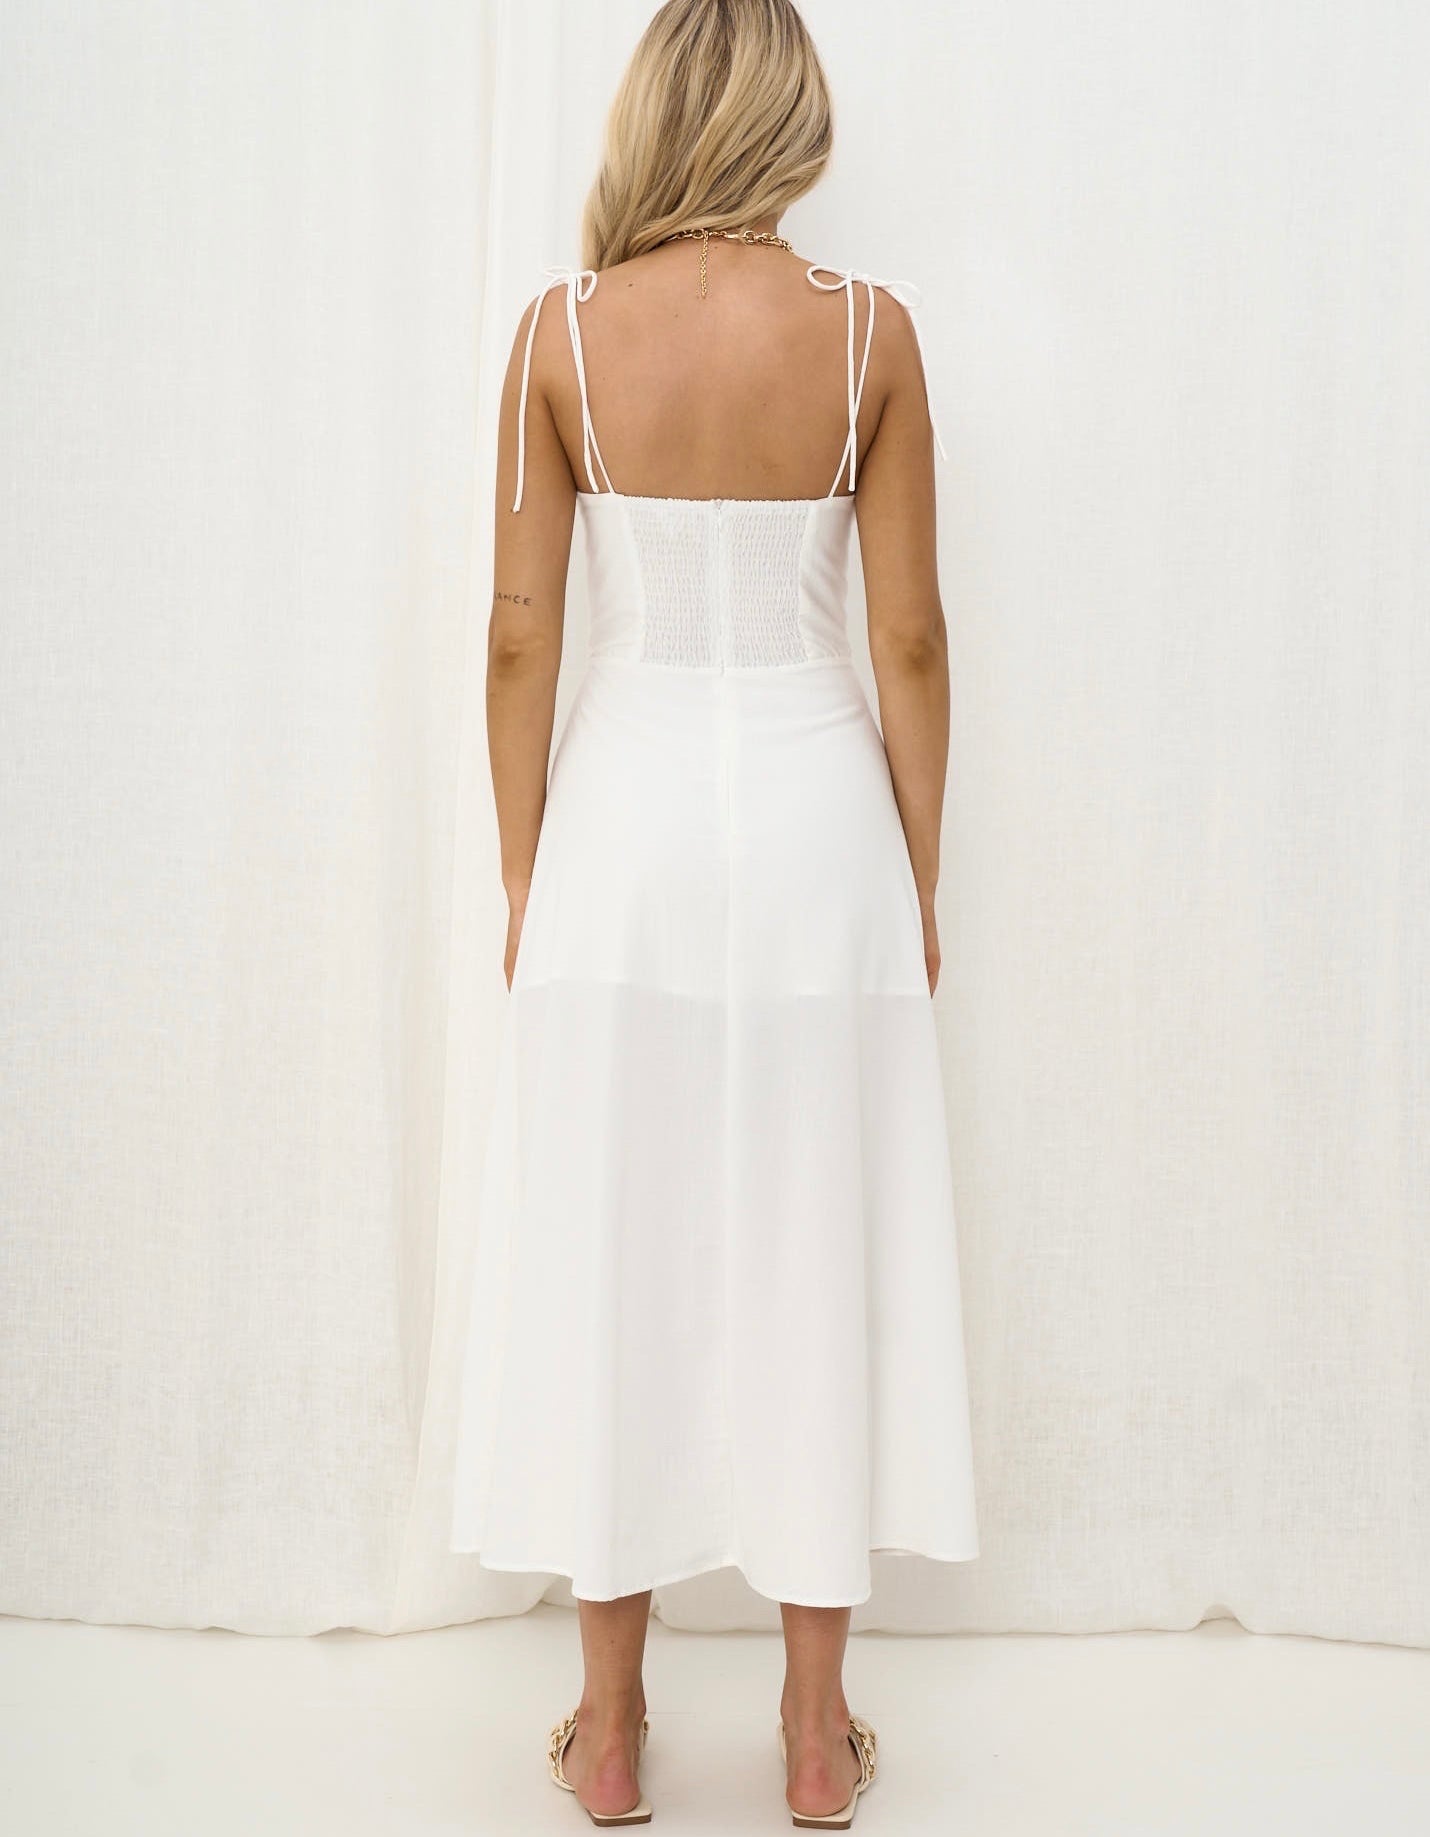 TILLY DRESS - White